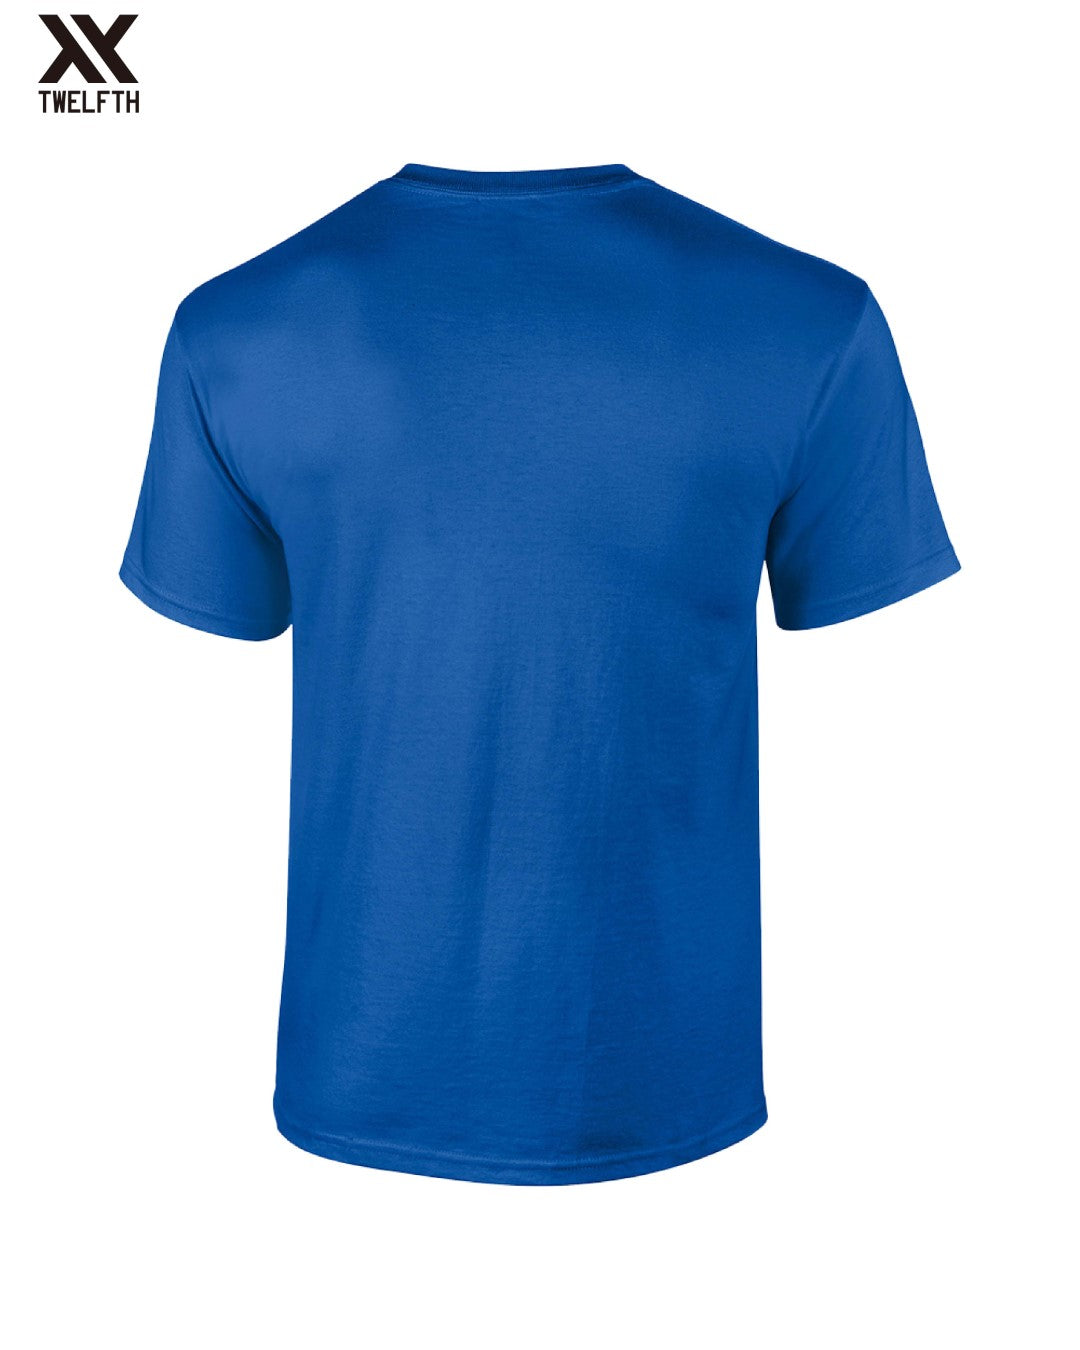 Verona Crest T-Shirt - Mens